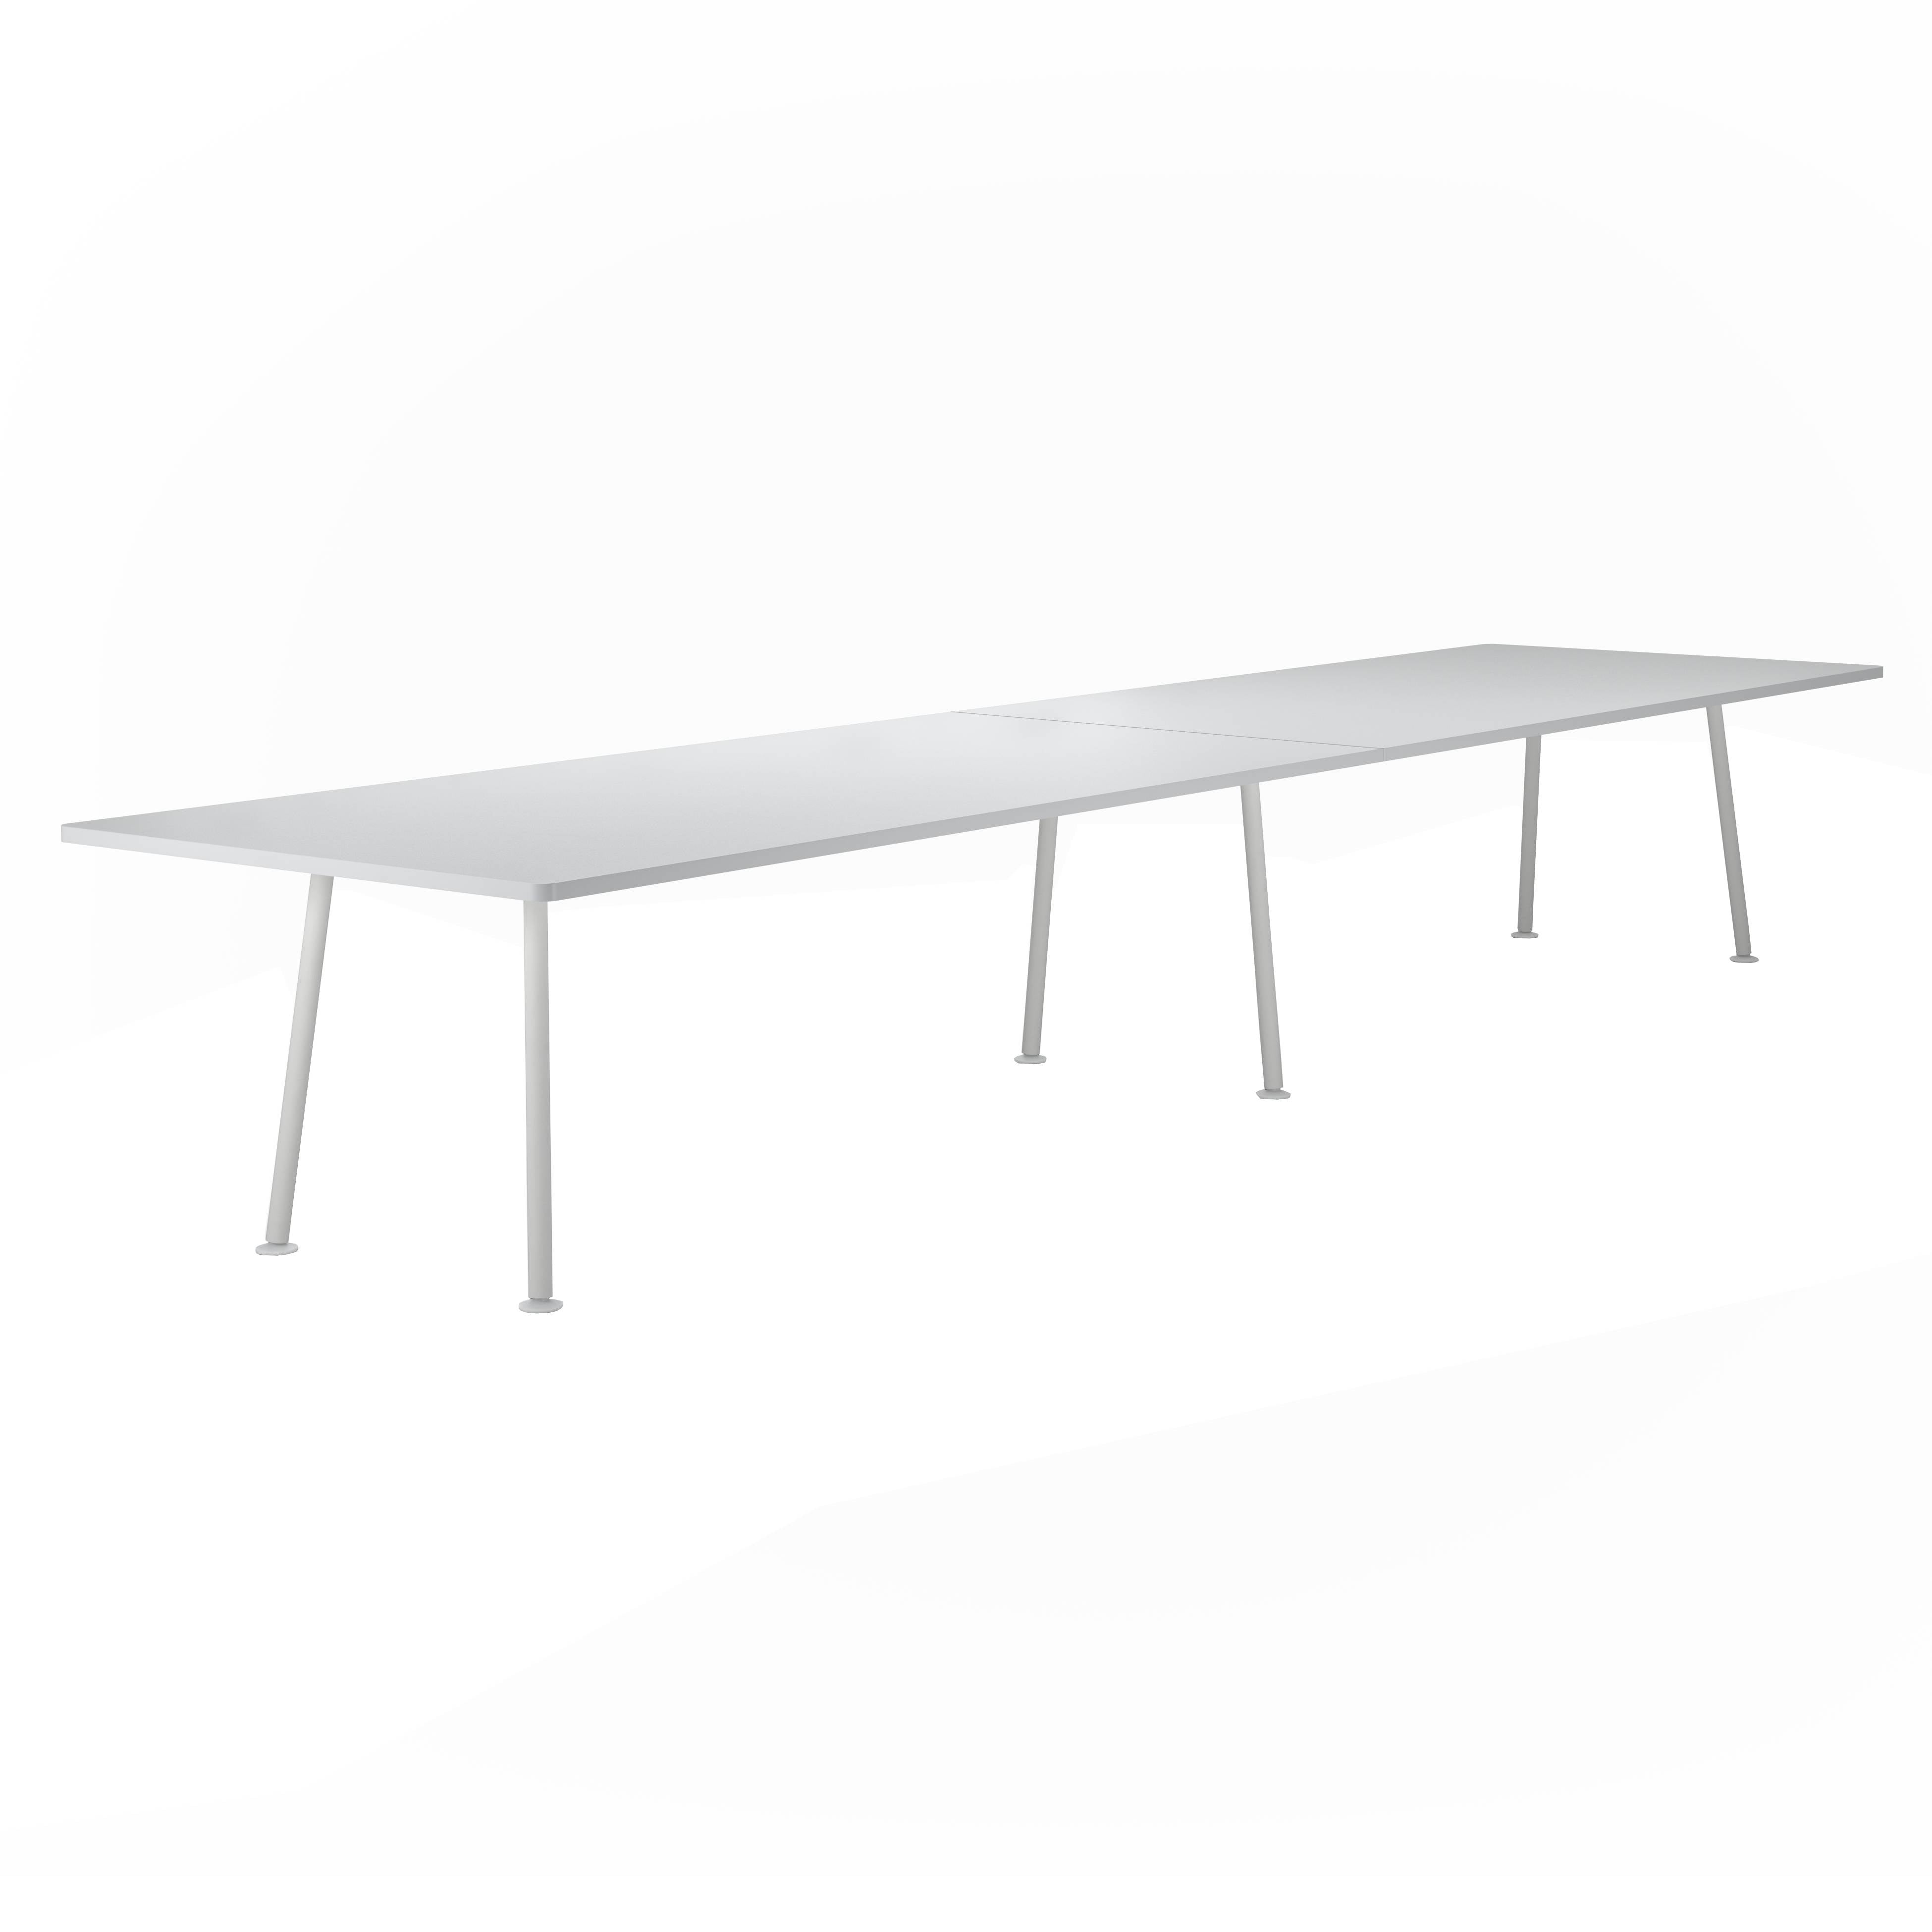 Landa Table: Counter + Large - 181.1